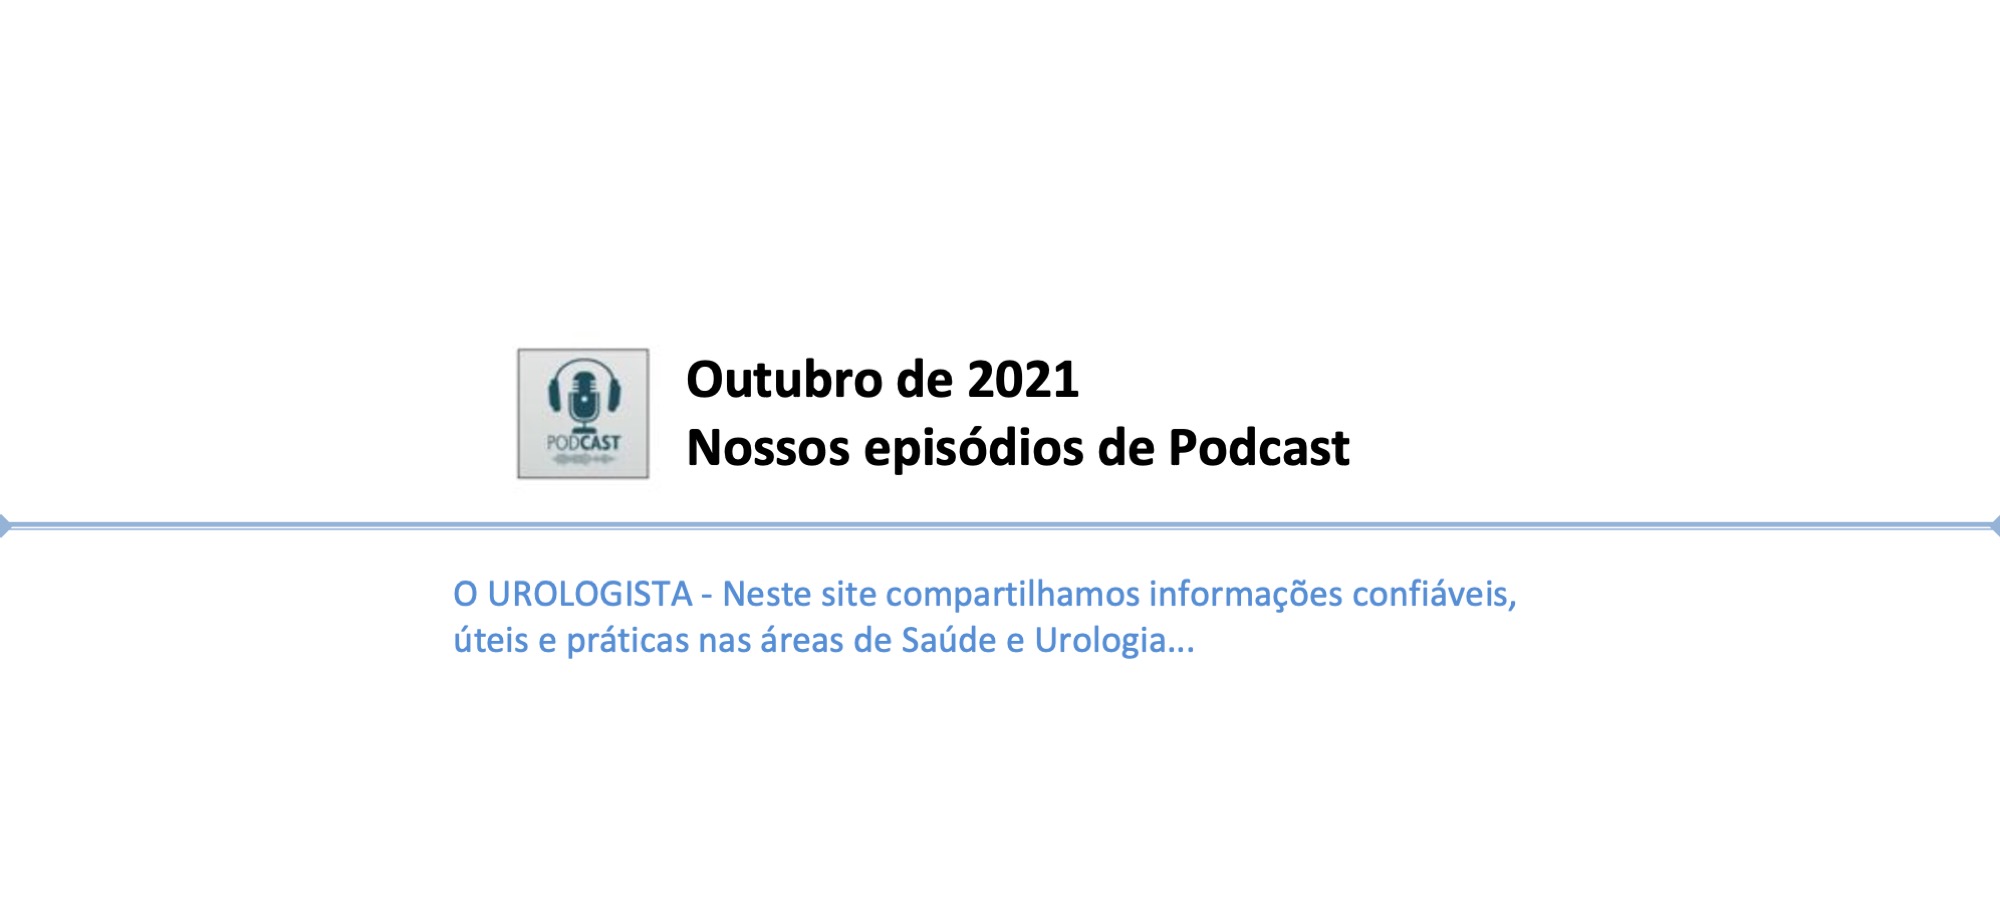 Podcast O Urologista. Episódios de Outubro de 2021.